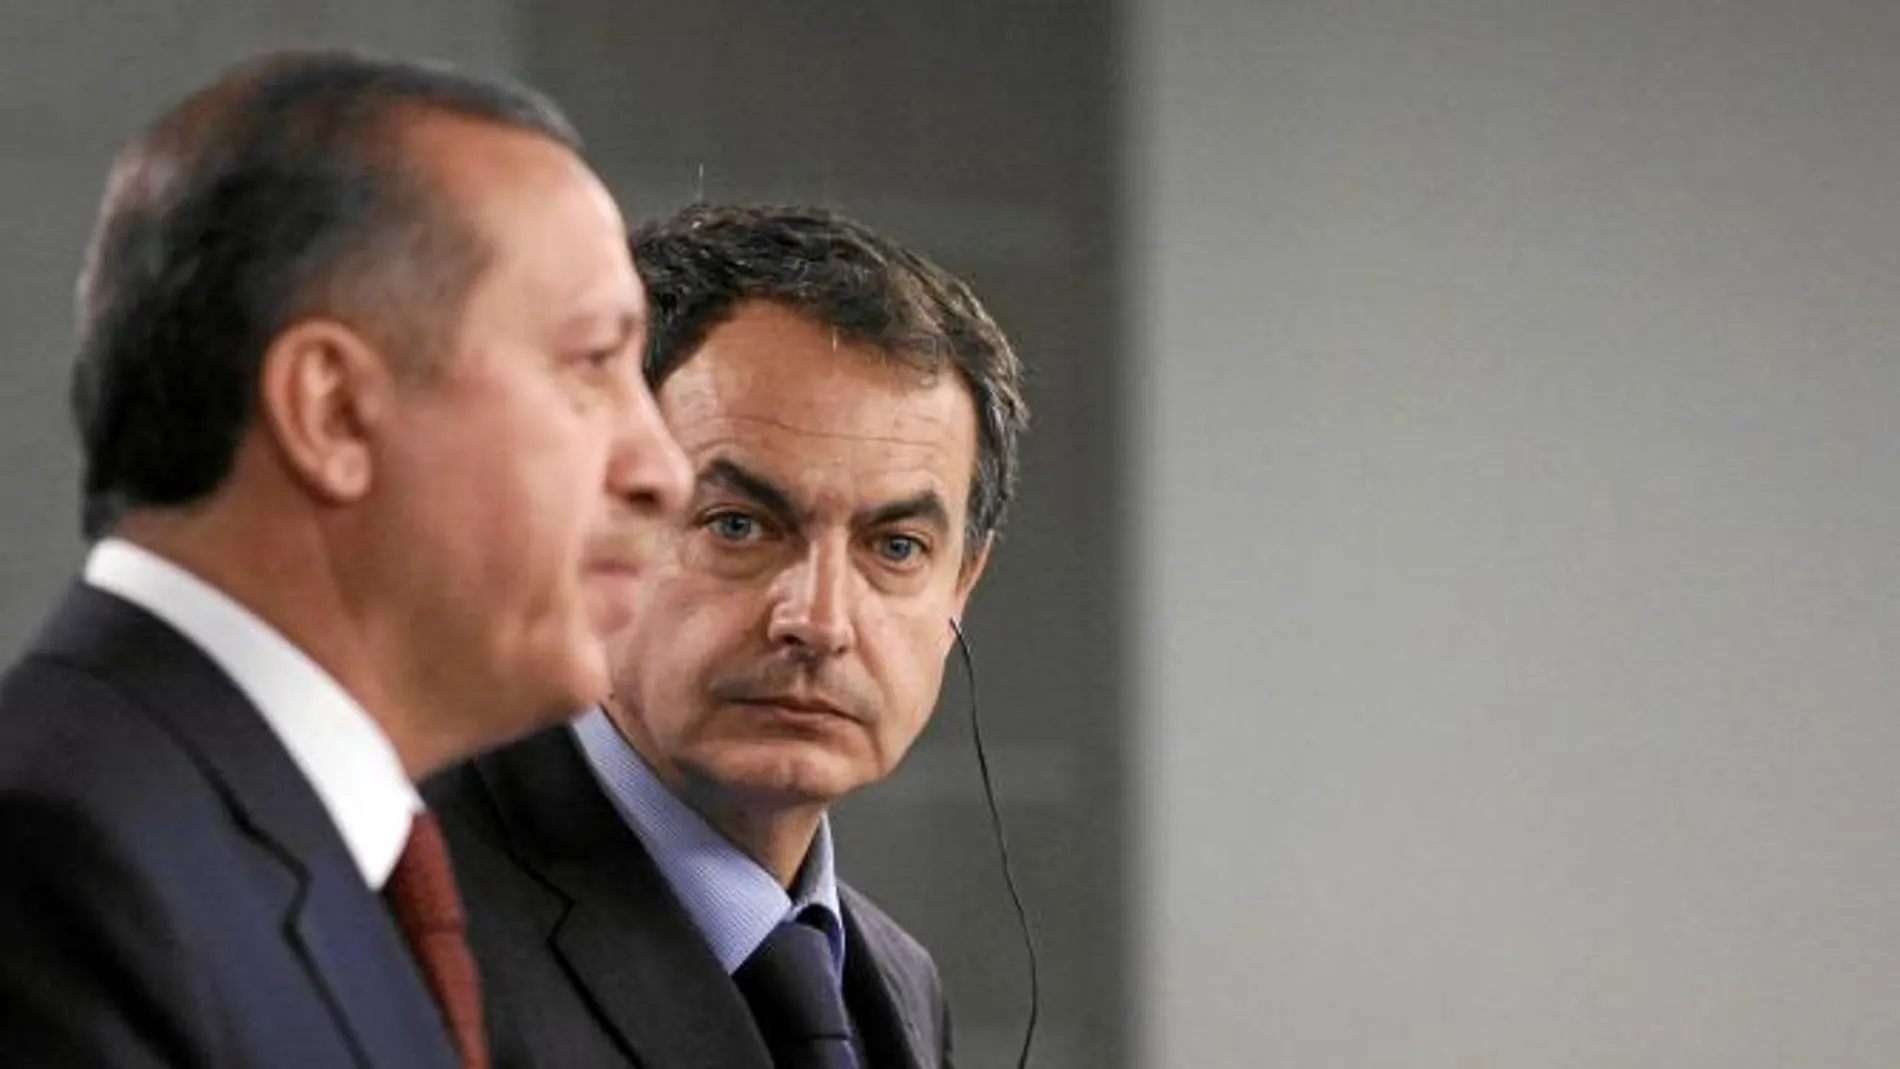 Zapatero, en imagen de archivo, junto a su principal aliado en su propuesta de la Alianza de Civilizaciones, el primero ministro turco, Tayip Erdogan